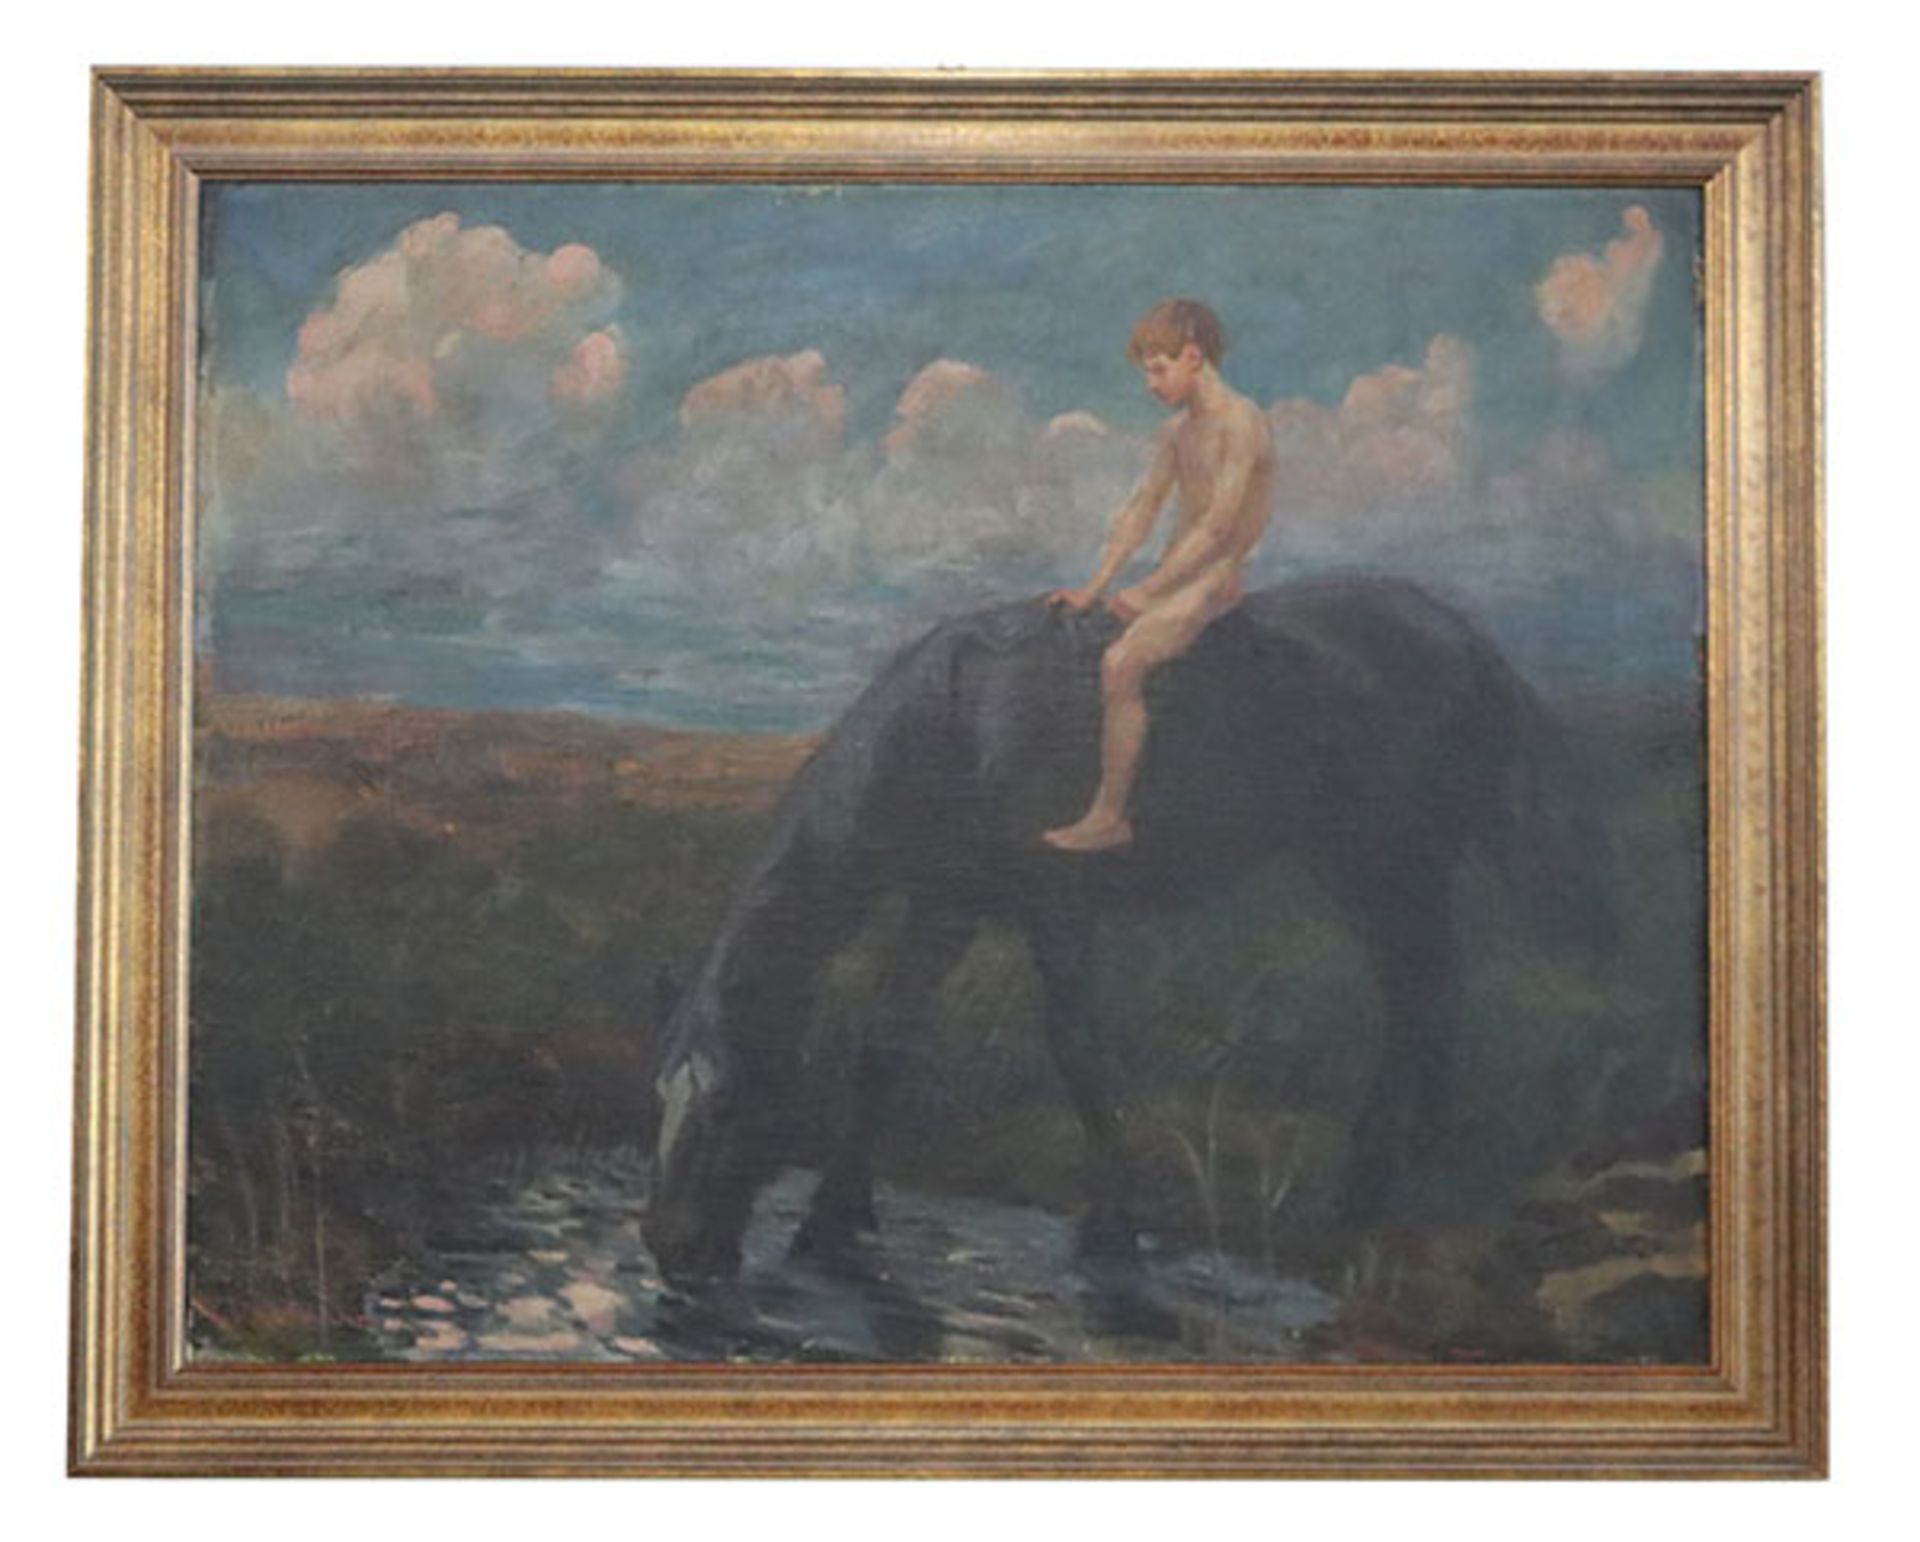 Gemälde ÖL/LW 'Junge auf Pferd', signiert L. v. Hofmann, wohl Ludwig von Hofmann, * 1861 Darmstadt +